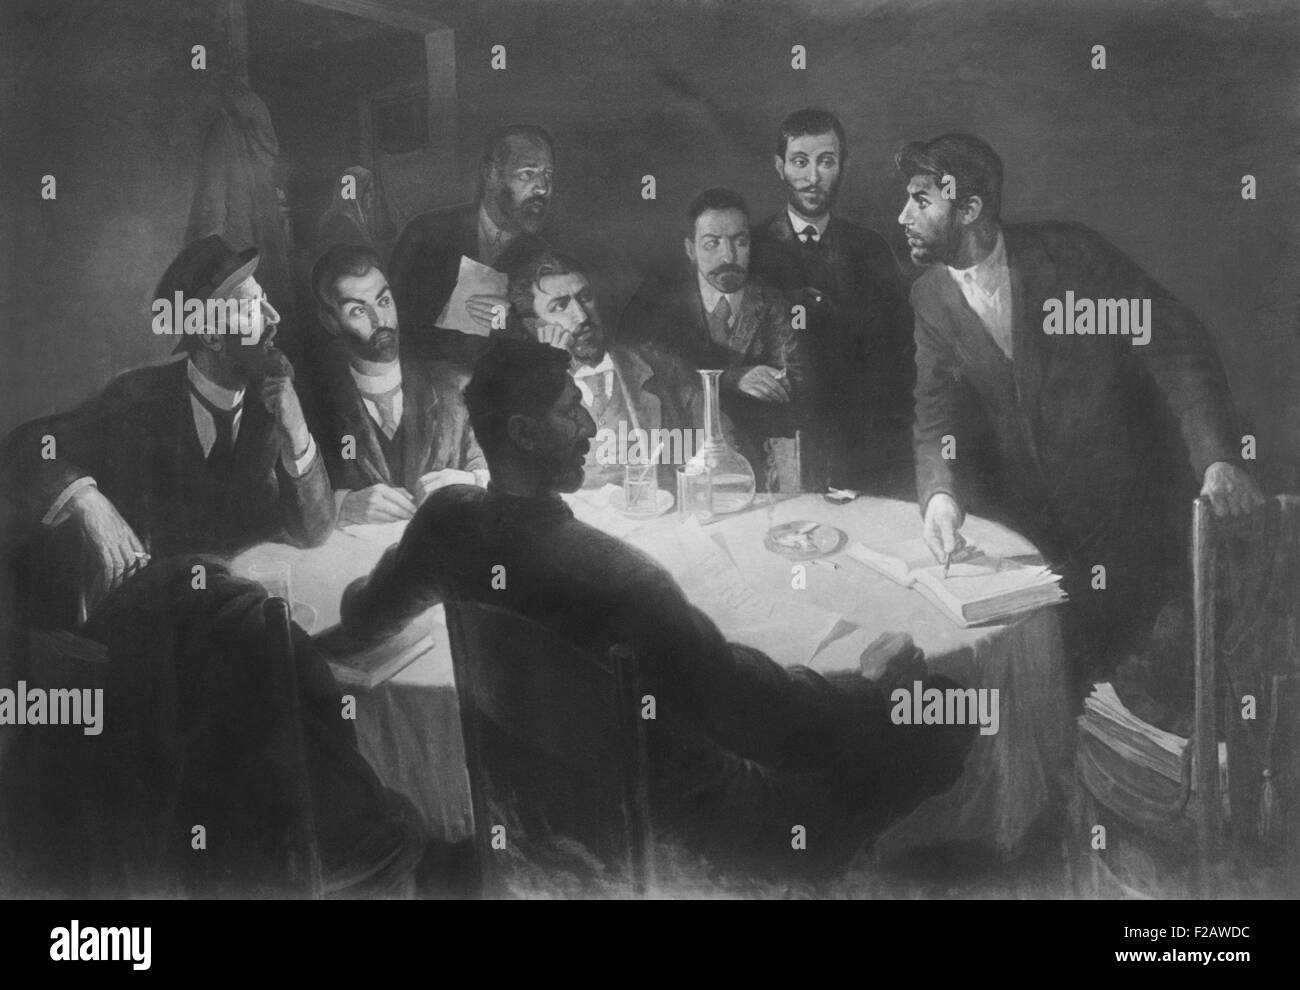 Josef Stalin dirigiendo una reunión con sus compañeros en el movimiento revolucionario. Reproducción de una pintura del artista I.Z. Vepkhvadze. Ca. 1900. (CSU 2015 11 1387) Foto de stock